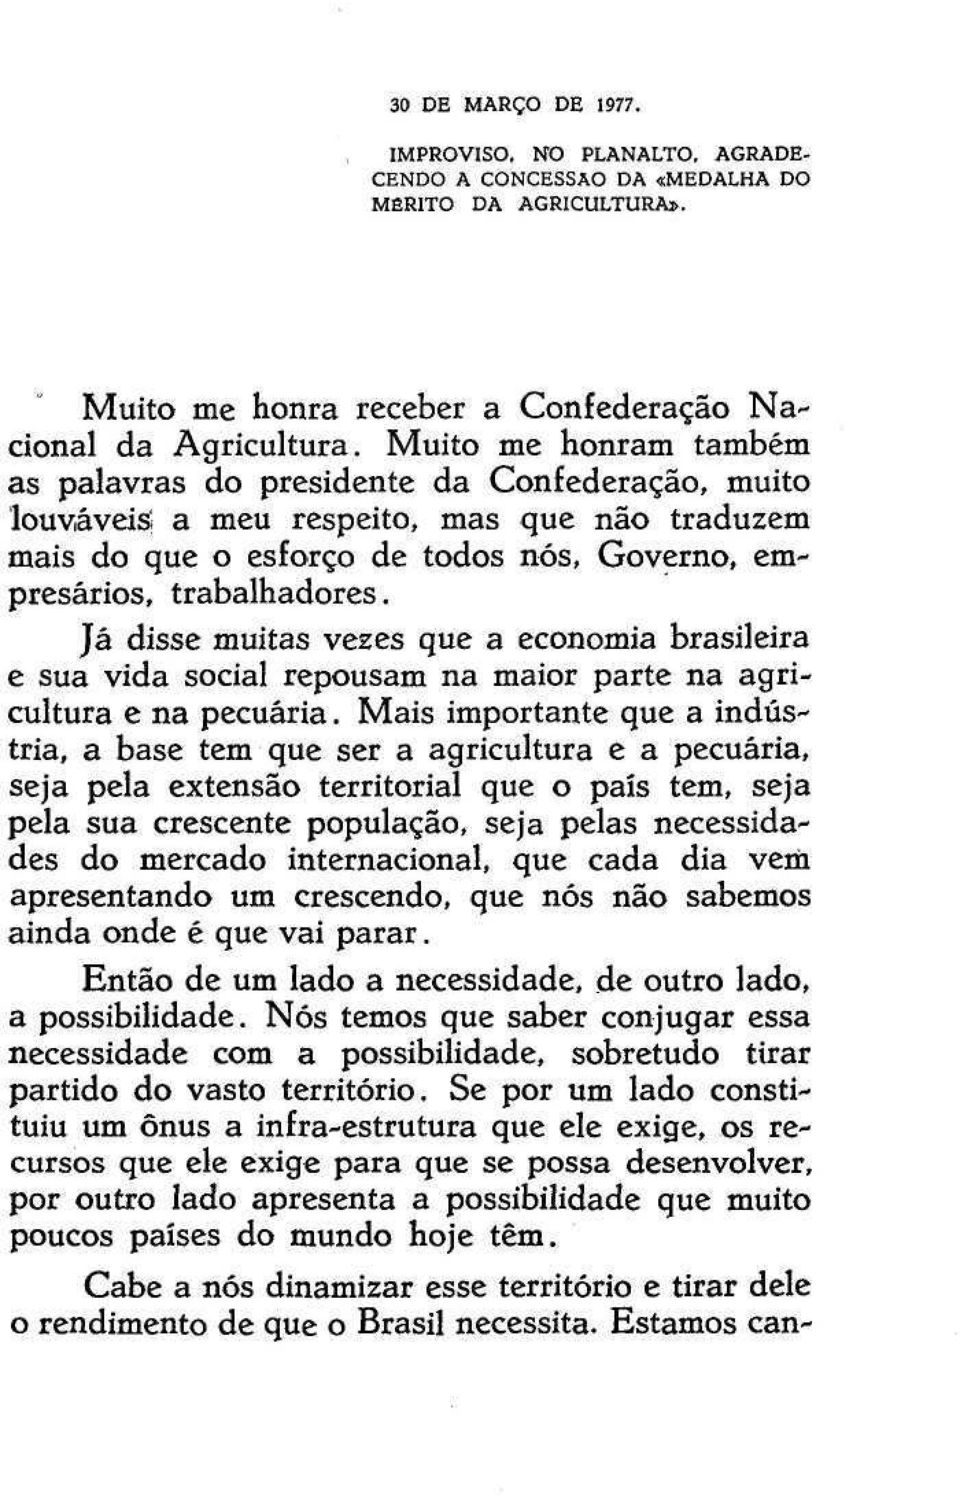 Já disse muitas vezes que a economia brasileira e sua vida social repousam na maior parte na agricultura e na pecuária.